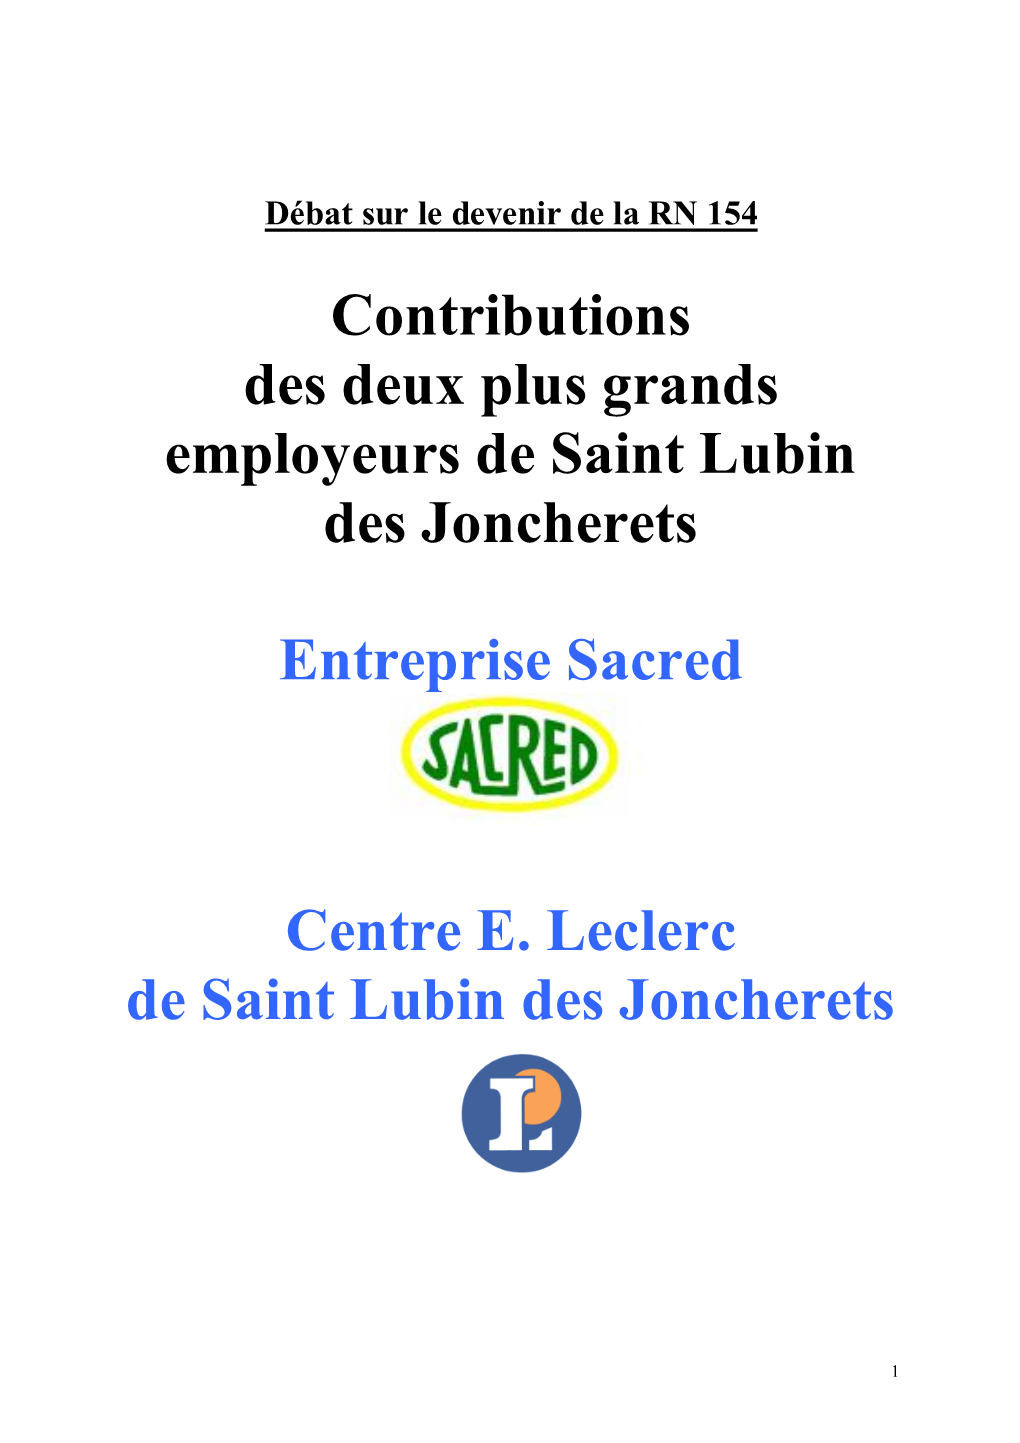 Contributions Des Deux Plus Grands Employeurs De Saint Lubin Des Joncherets Entreprise Sacred Centre E. Leclerc De Saint Lubin D